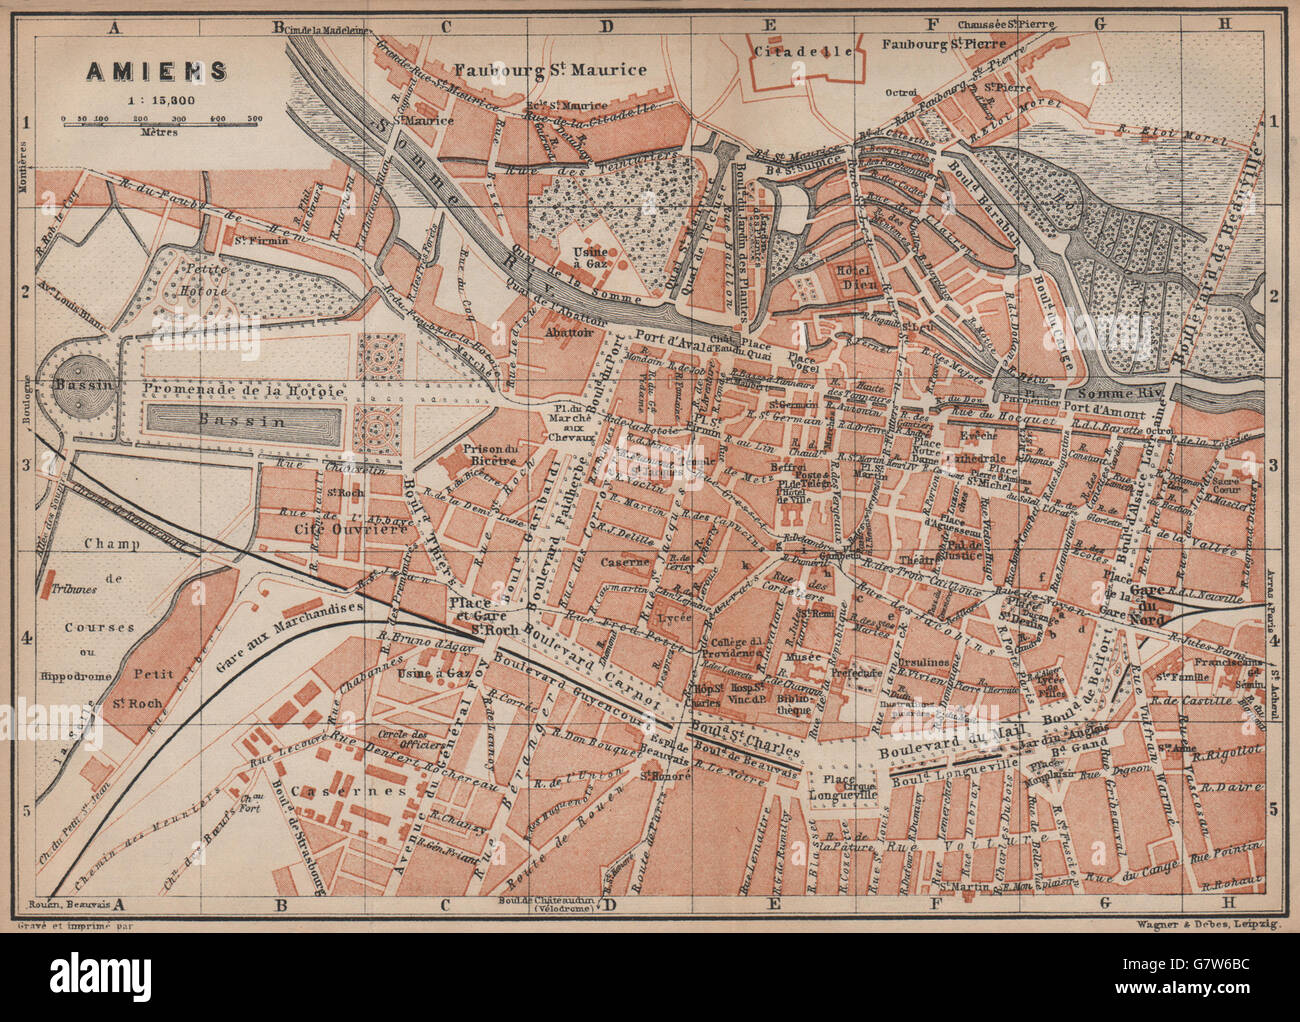 Somme carte BAEDEKER 1905 old map AMIENS antique town city plan de la ville 